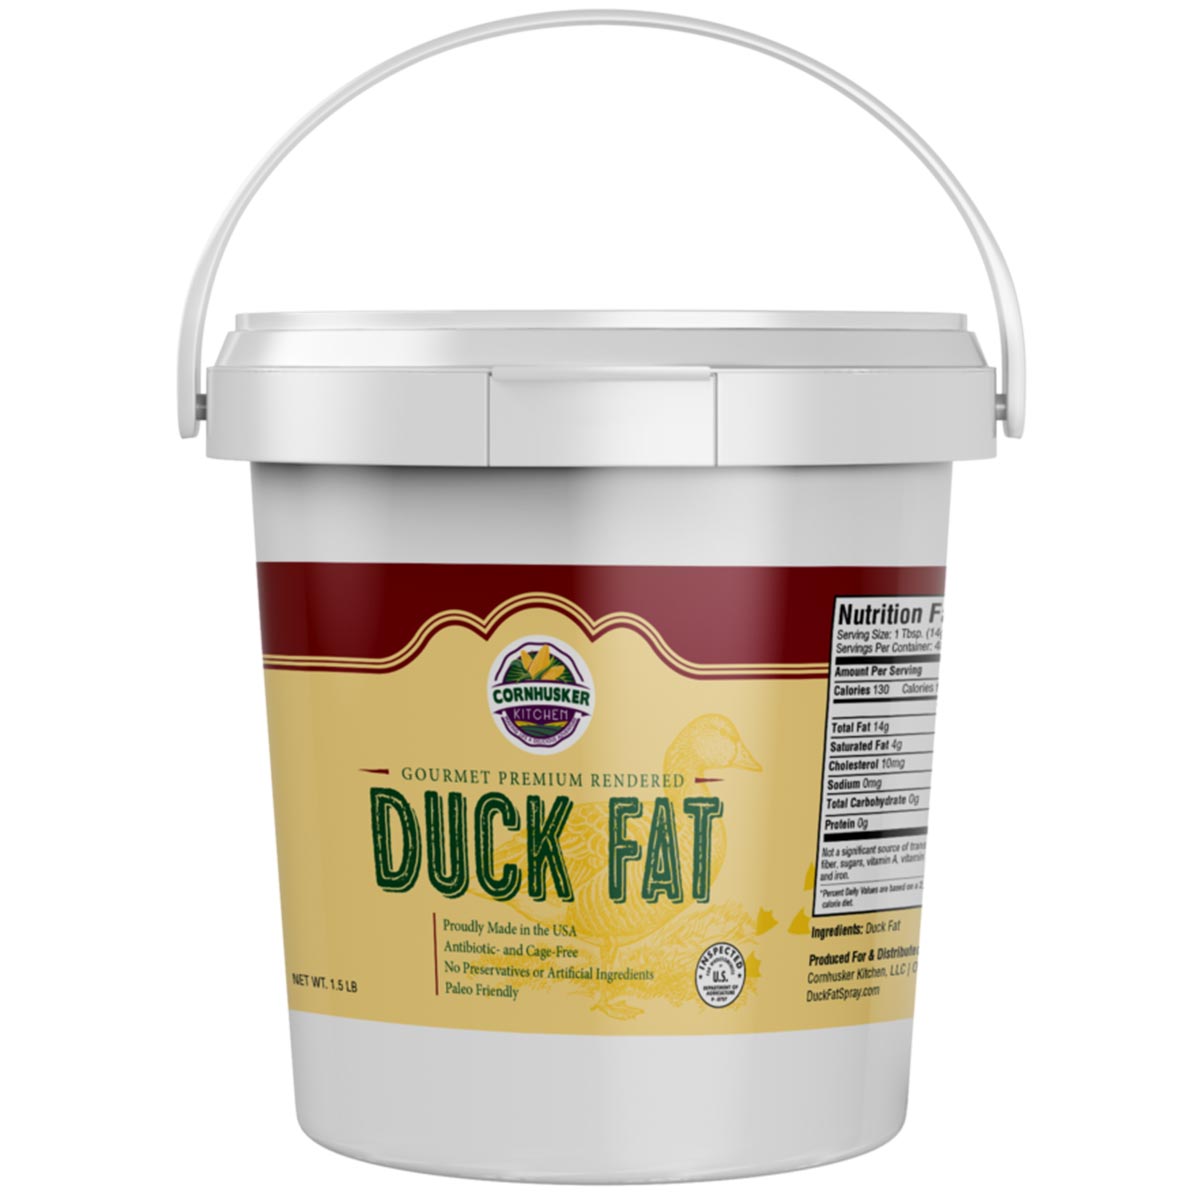 Premium Rendered DUCK FAT (1.5lb tub)